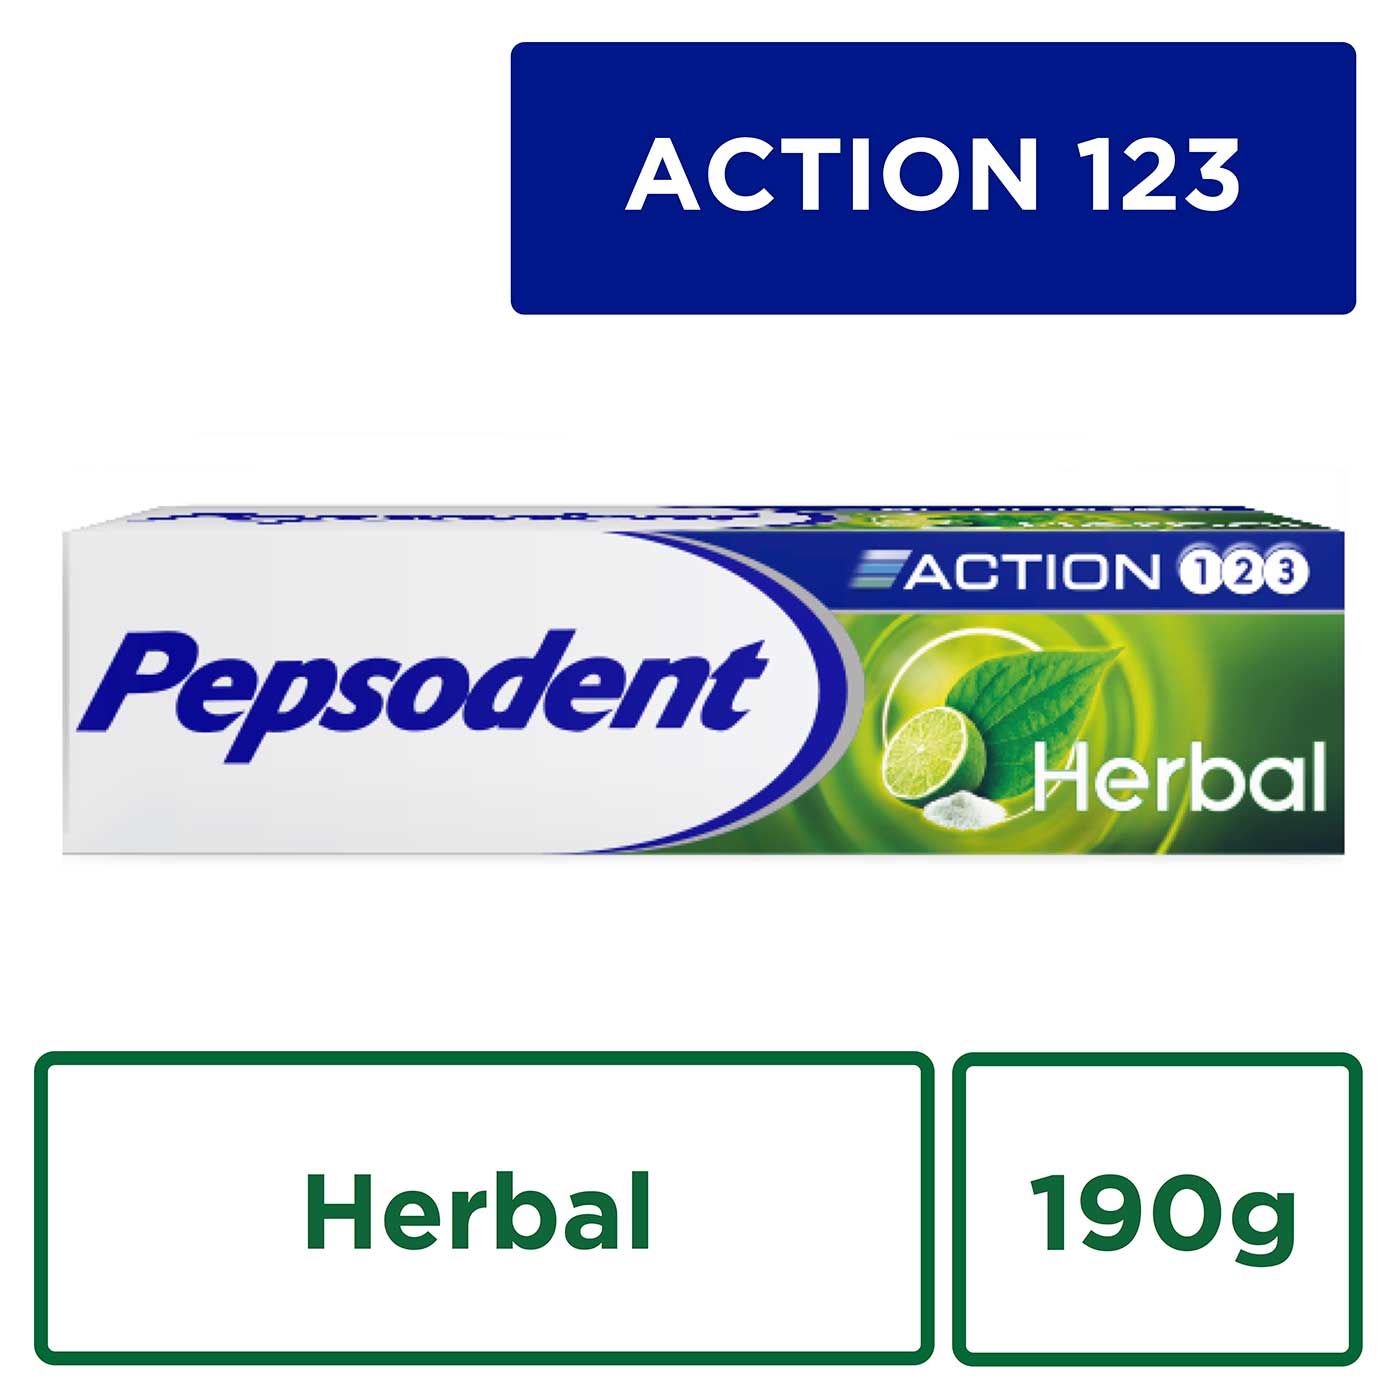 Pepsodent Action 123 PAsta gigi Herbal 190g - 3